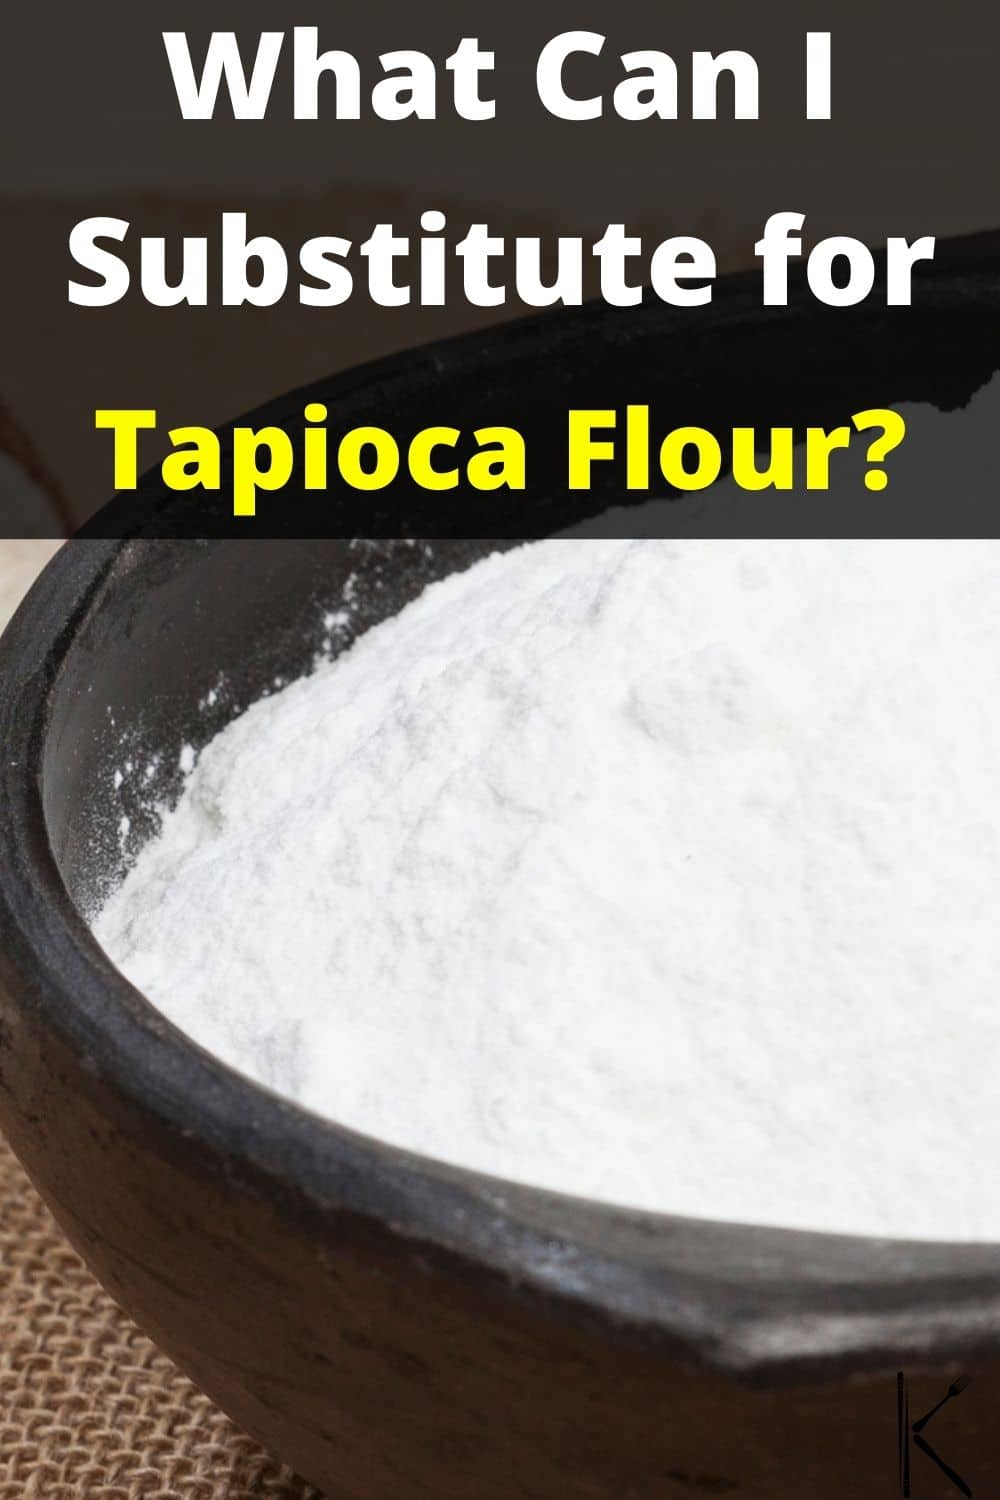 5-tapioca-flour-substitutes-tasty-options-revealed-kitchenous